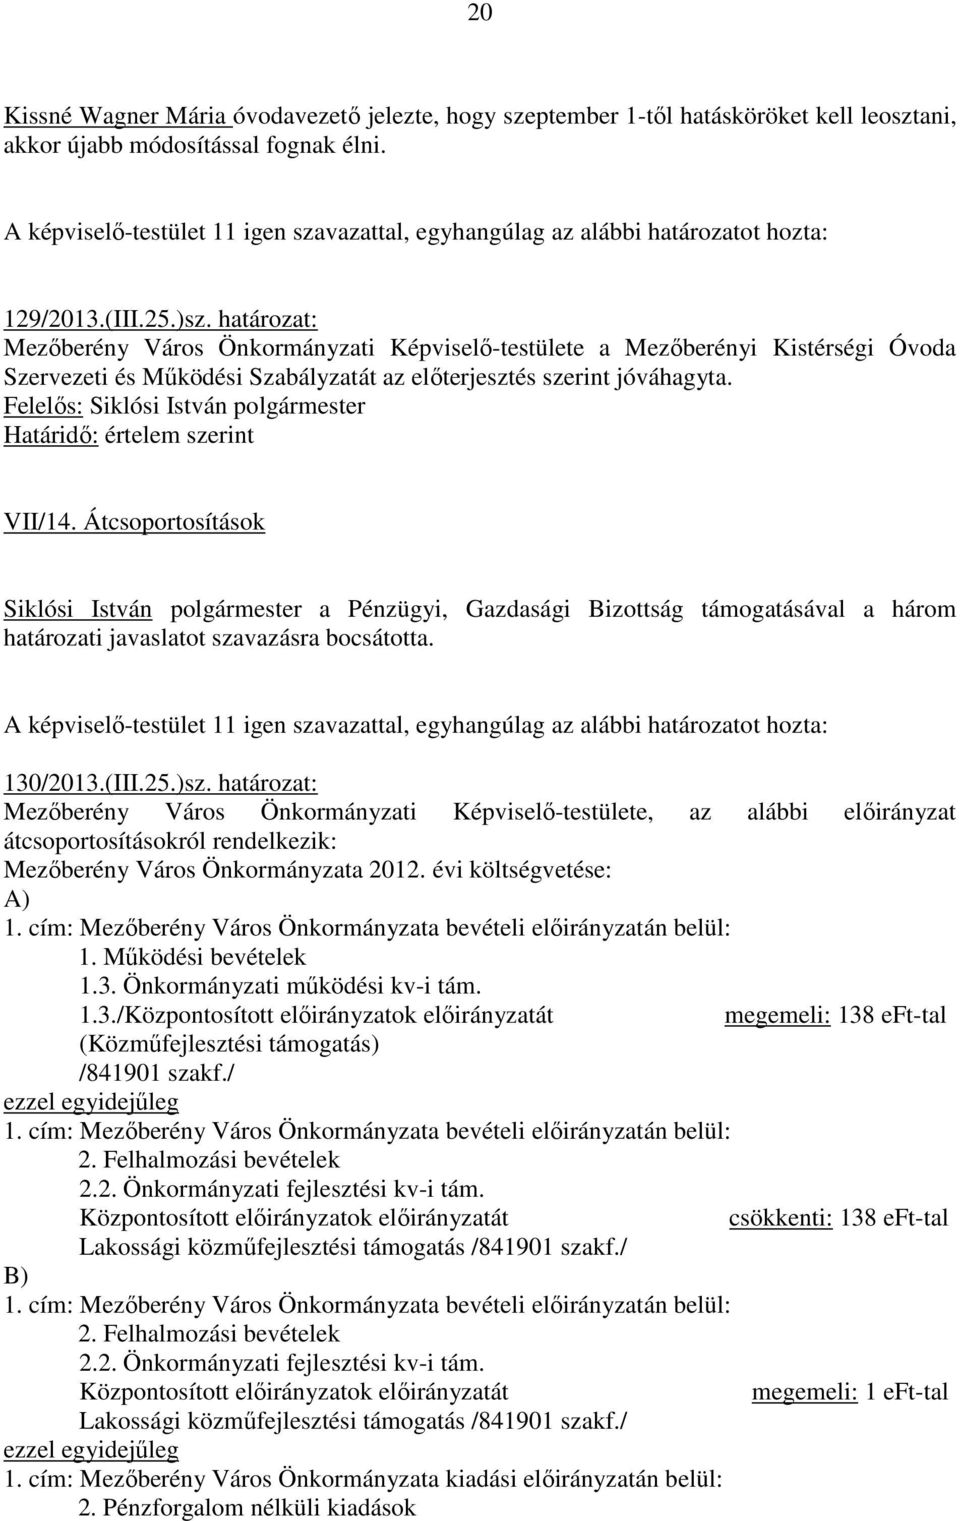 Átcsoportosítások Siklósi István polgármester a Pénzügyi, Gazdasági Bizottság támogatásával a három határozati javaslatot szavazásra bocsátotta. 130/2013.(III.25.)sz.